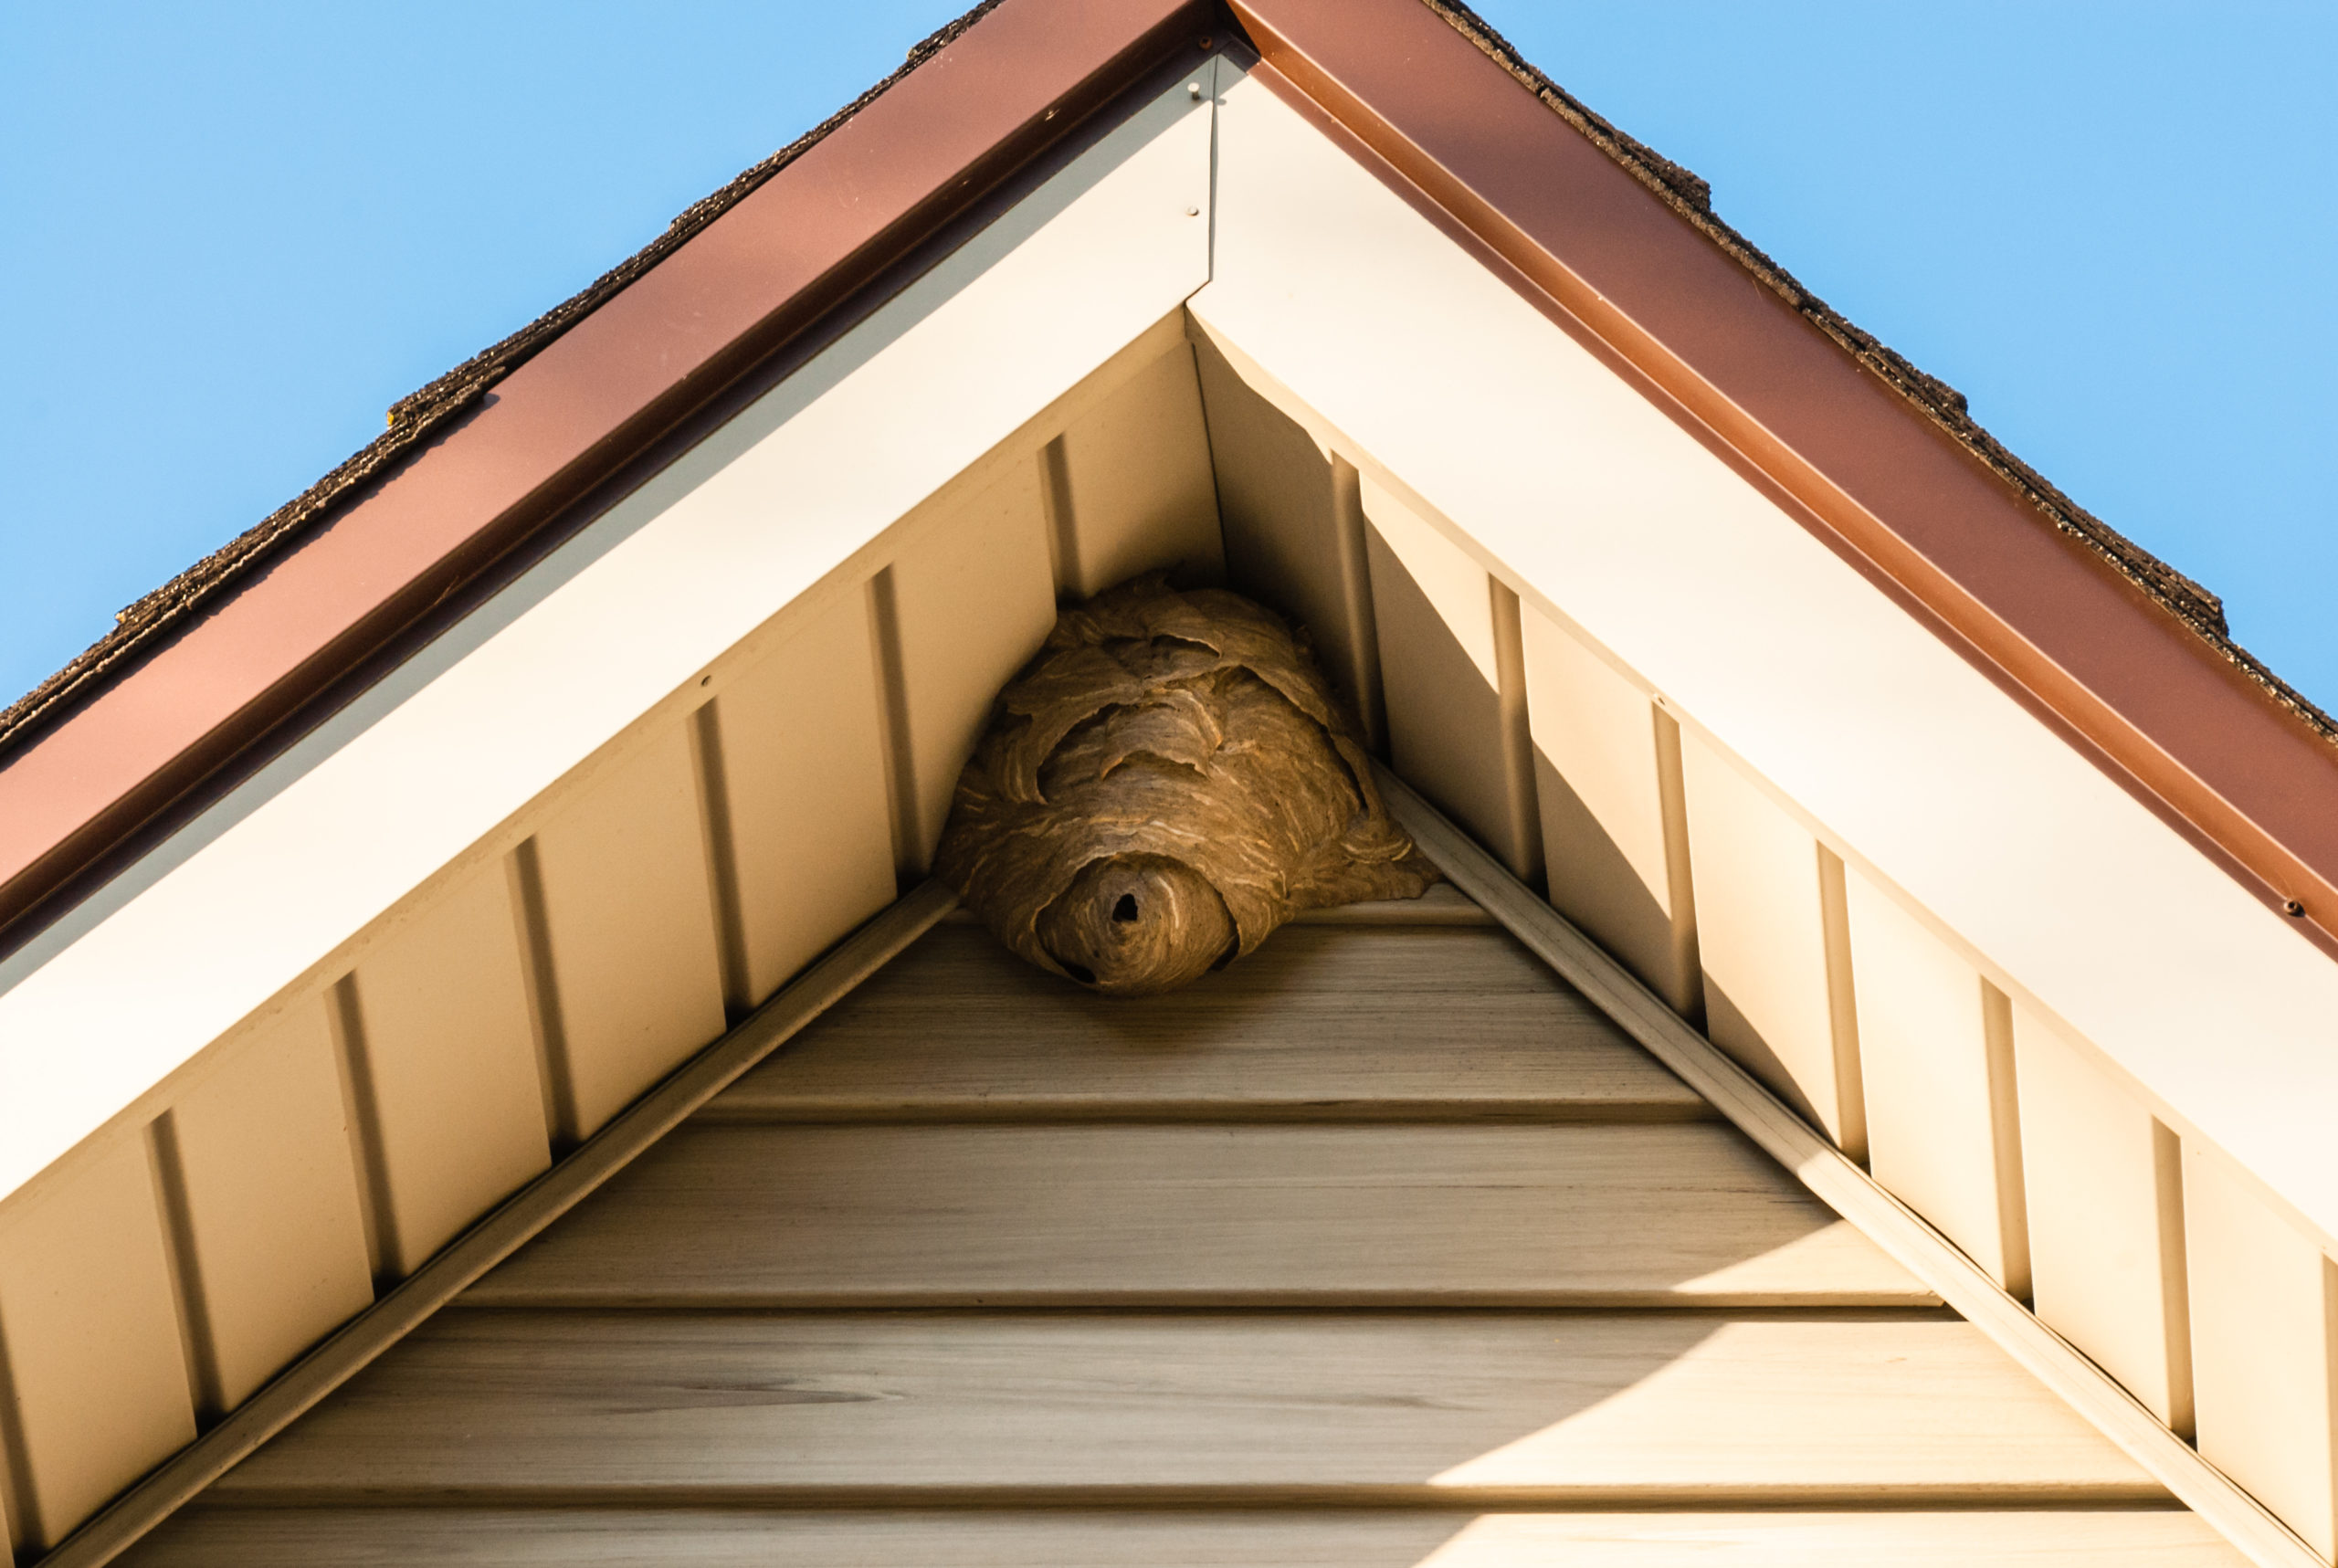 Улей на крыше. Как избавиться от осиных или пчелиных ульев на крыше частного дома